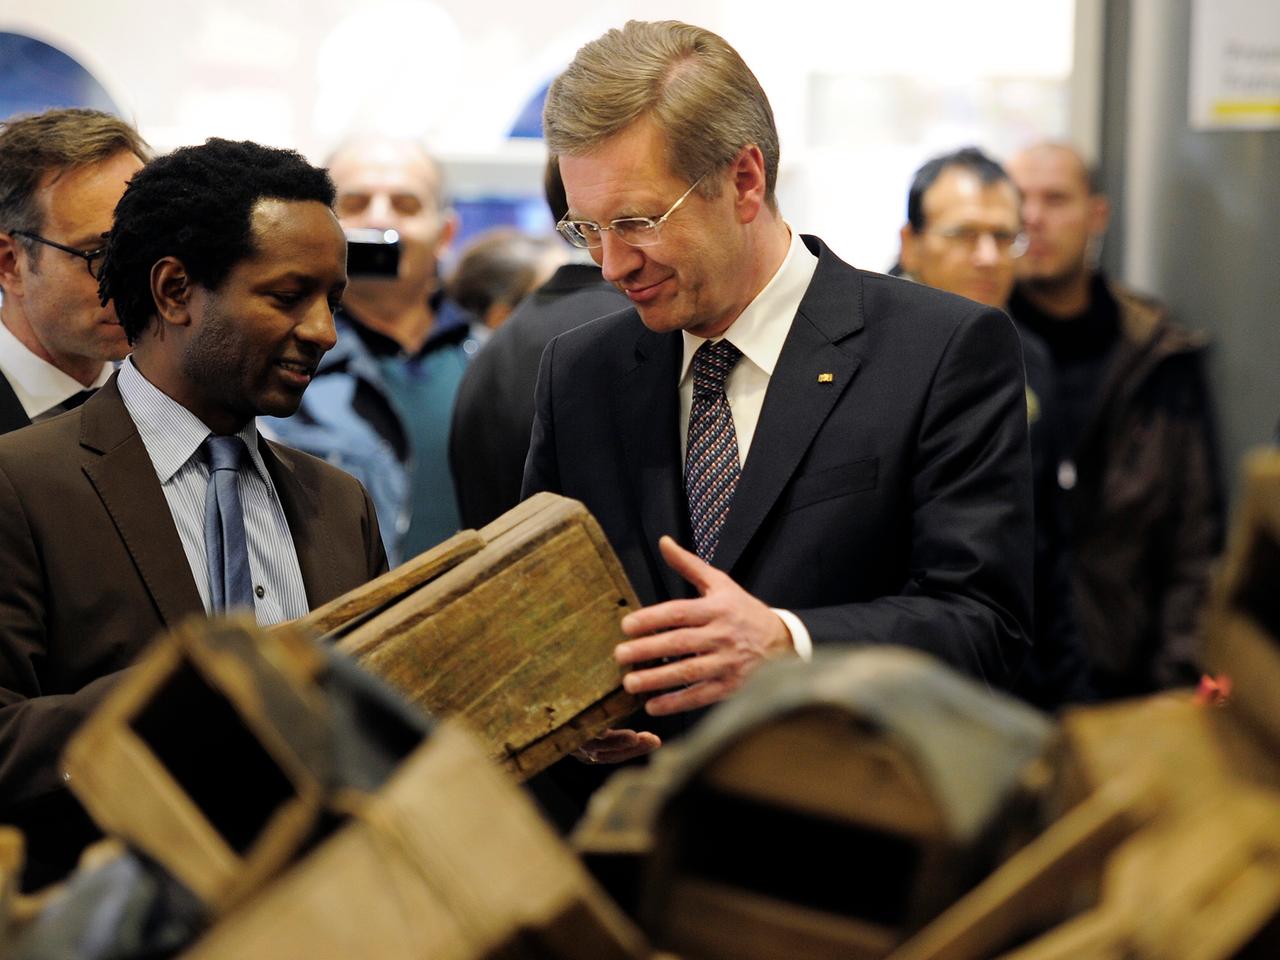 Oktober 2010: Damals sah sich auch der damalige Bundespräsident Christian Wulff die Schuhputzboxen an.